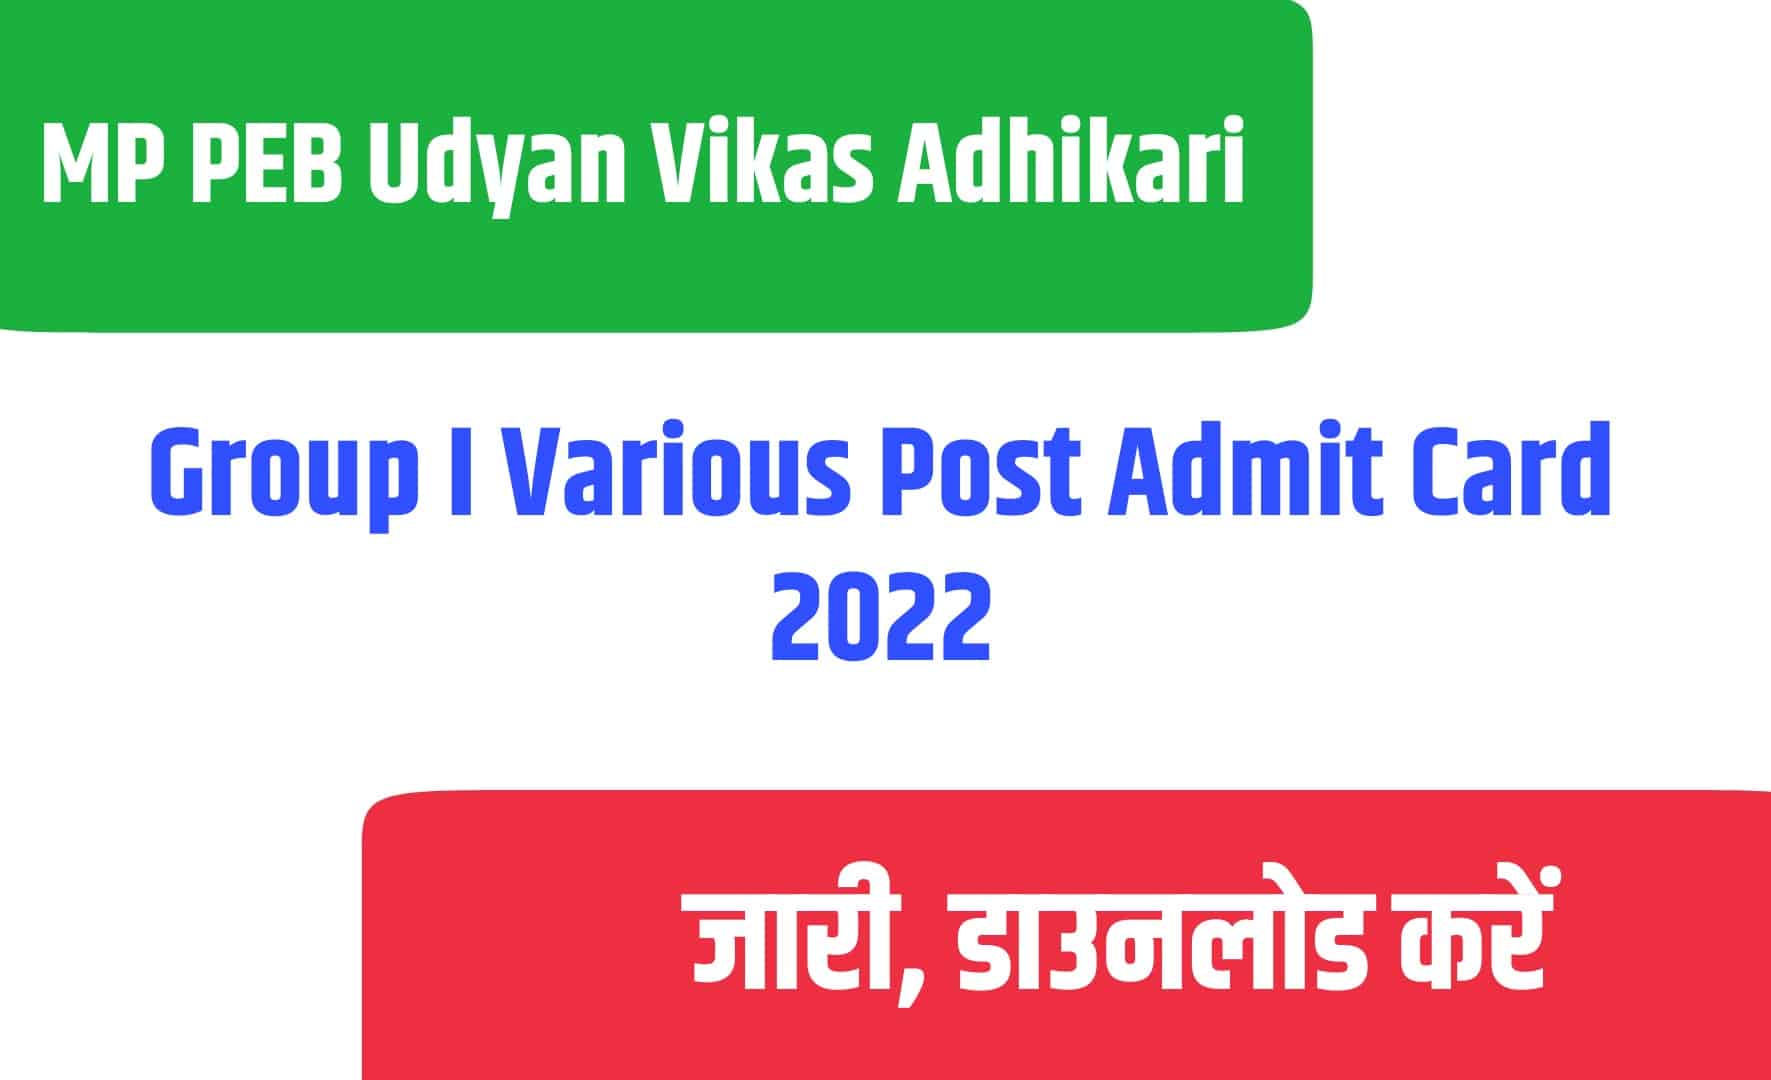 MP PEB Udyan Vikas Adhikari Group I Various Post Admit Card 2022 | एमपी पीईबी के विभिन्न पद एडमिट कार्ड जारी